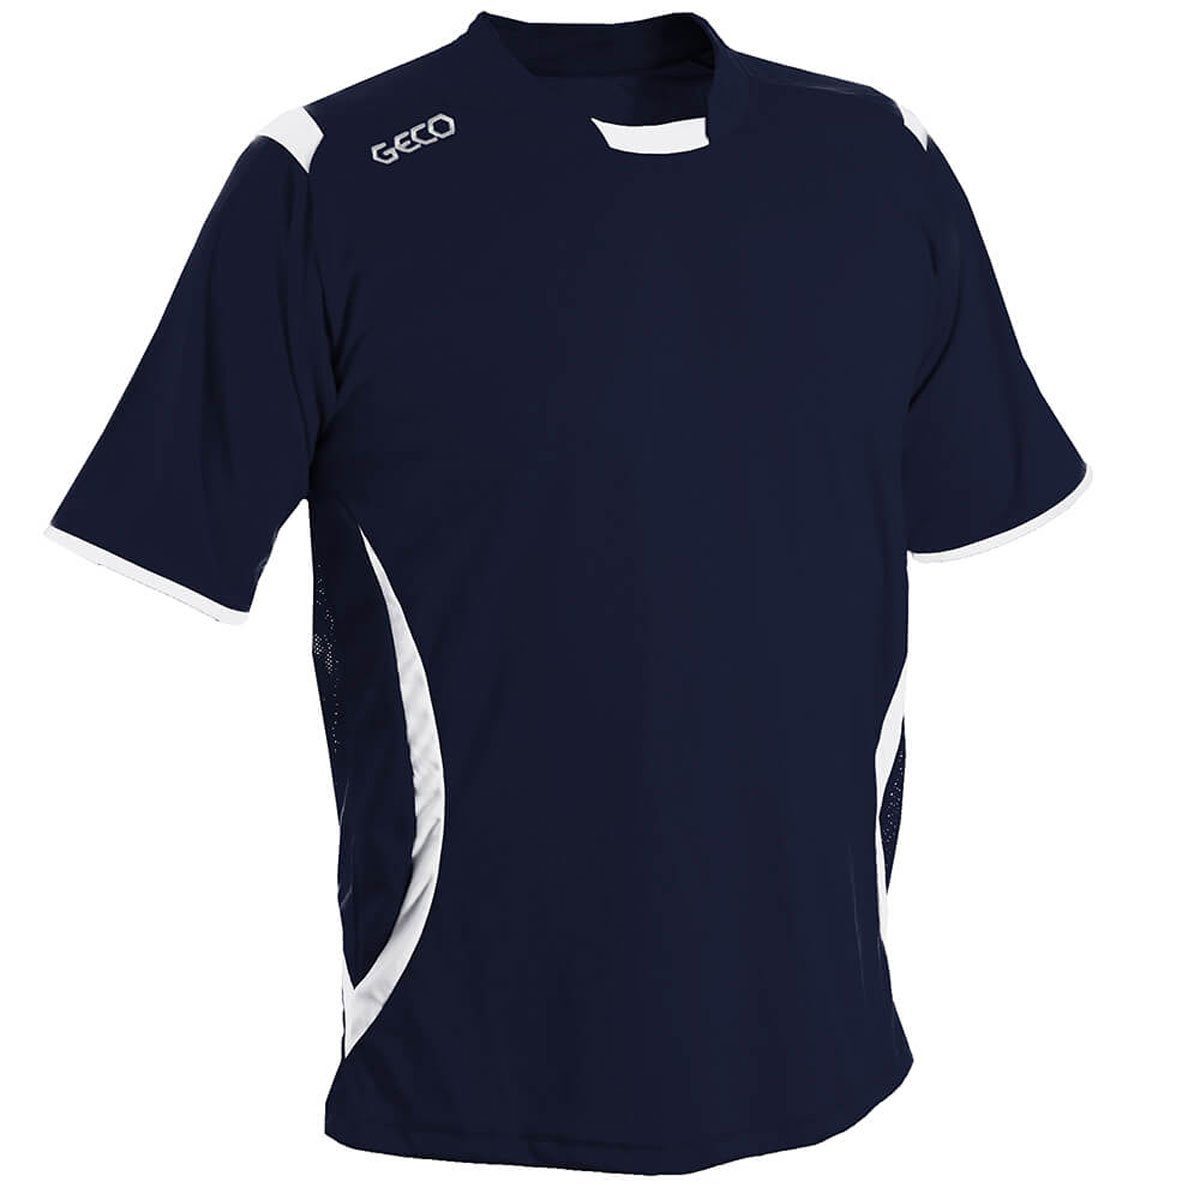 zweifarbig Geco Sportswear Levante Geco Fußballtrikot Trikot Fußballtrikot seitliche Mesh Einsätze navy/weiß kurzarm Fußball